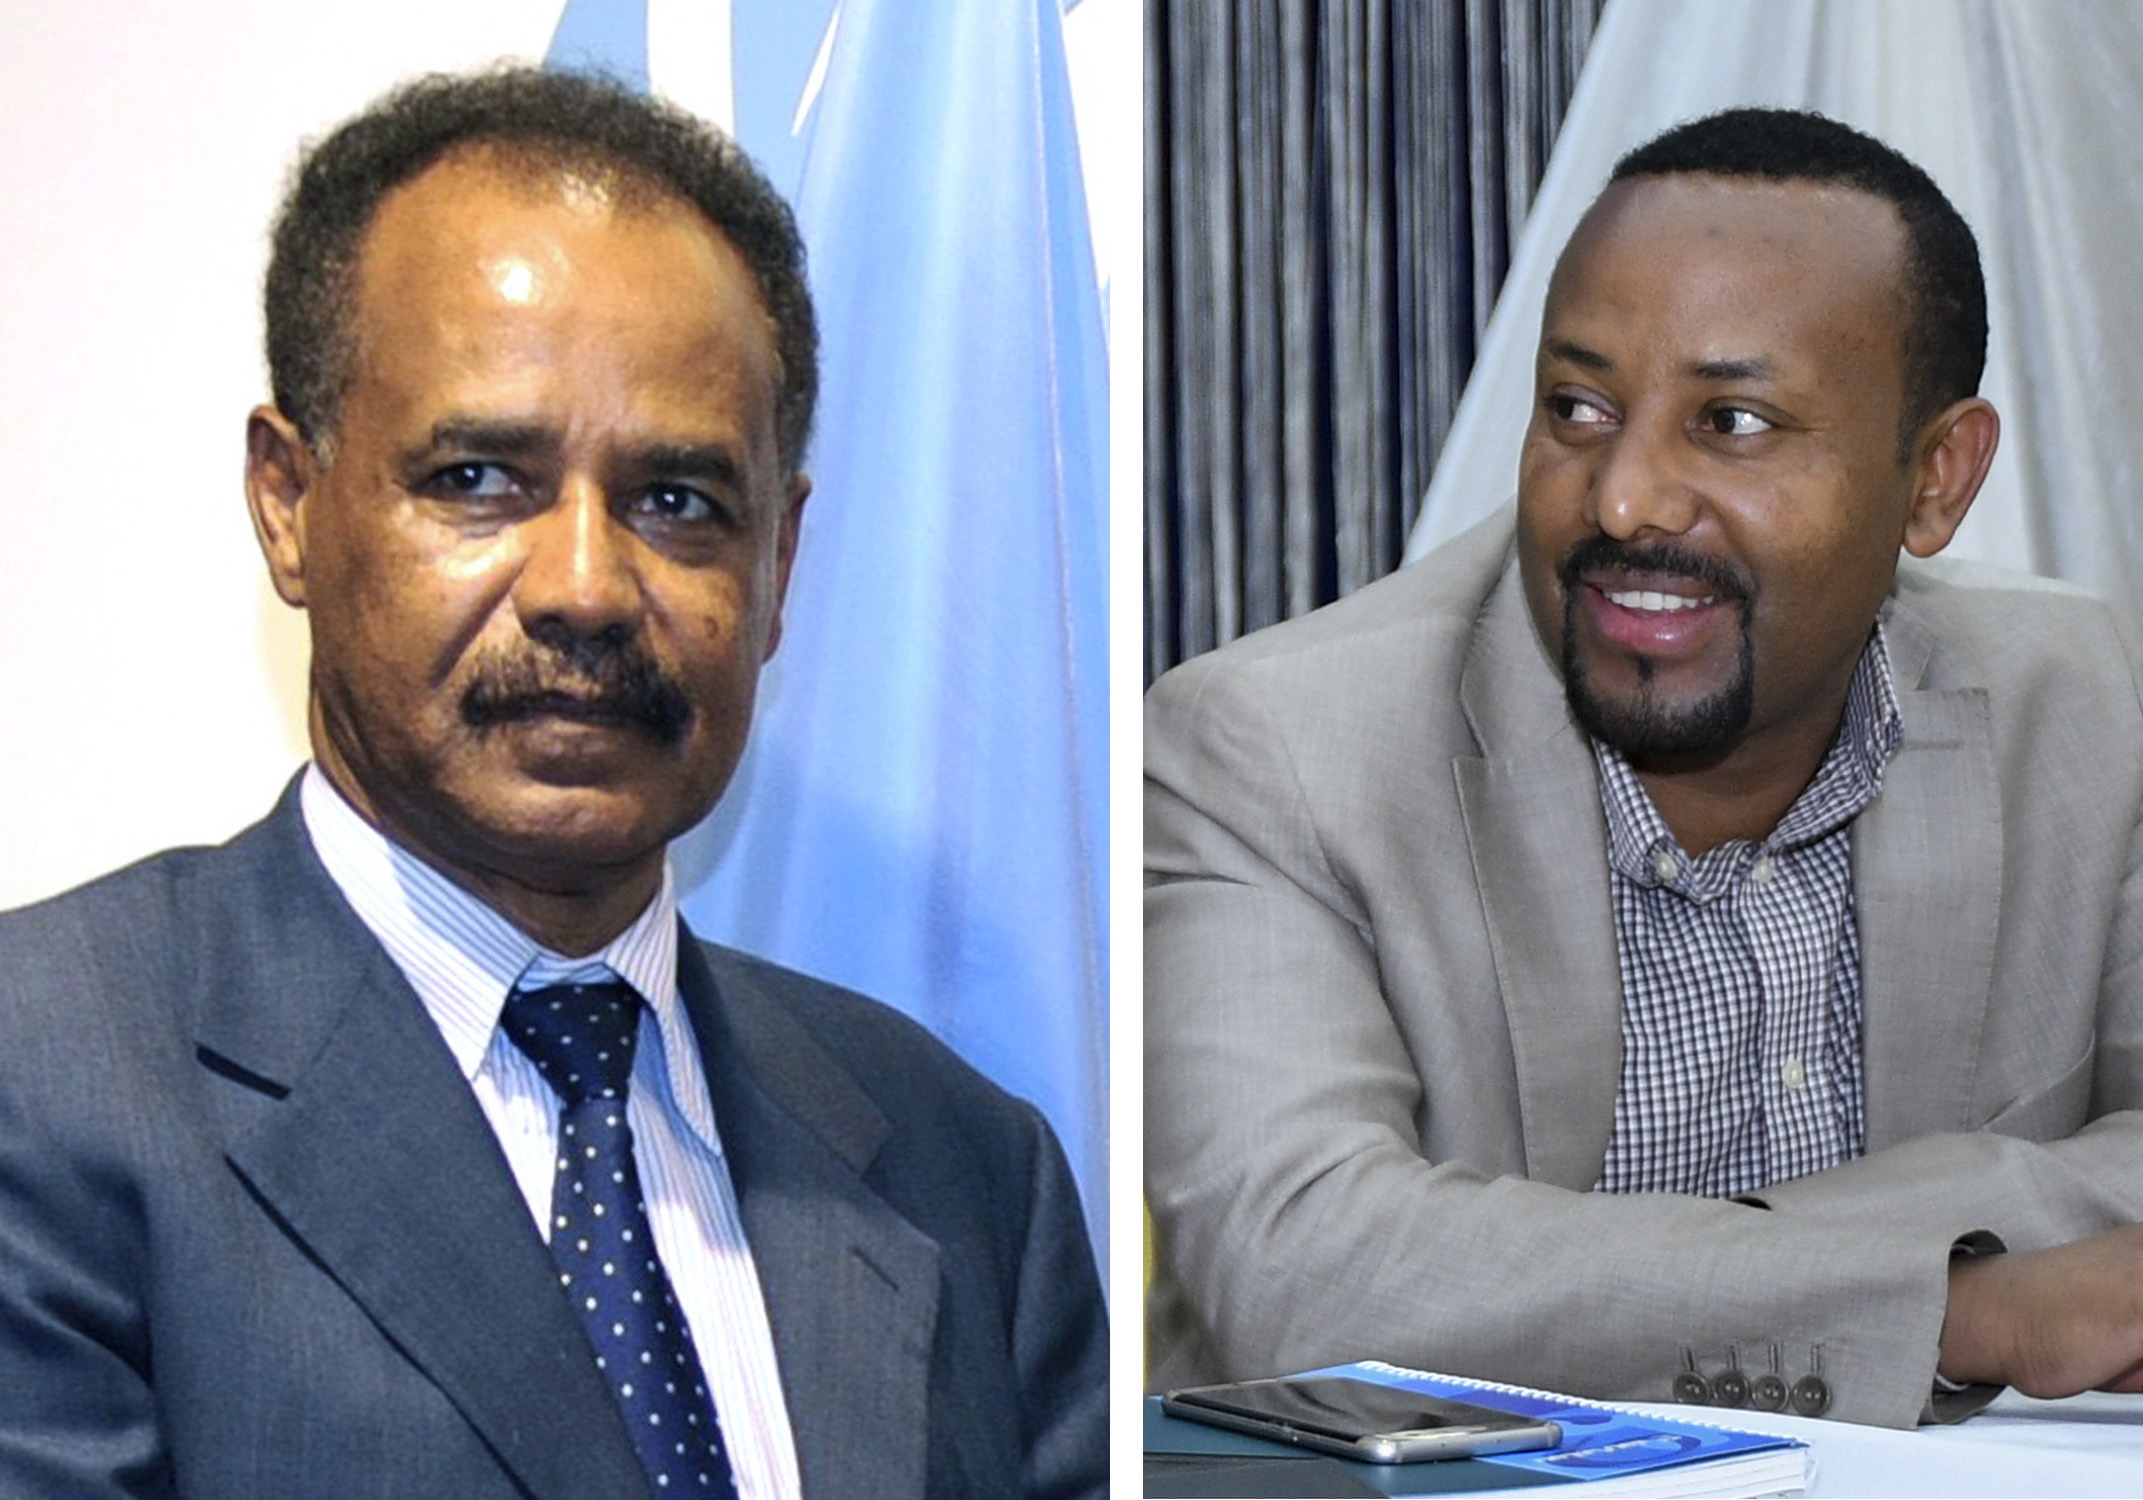 Κοινή διακήρυξη ειρήνης – φιλία από Ερυθραία – Αιθιοπία